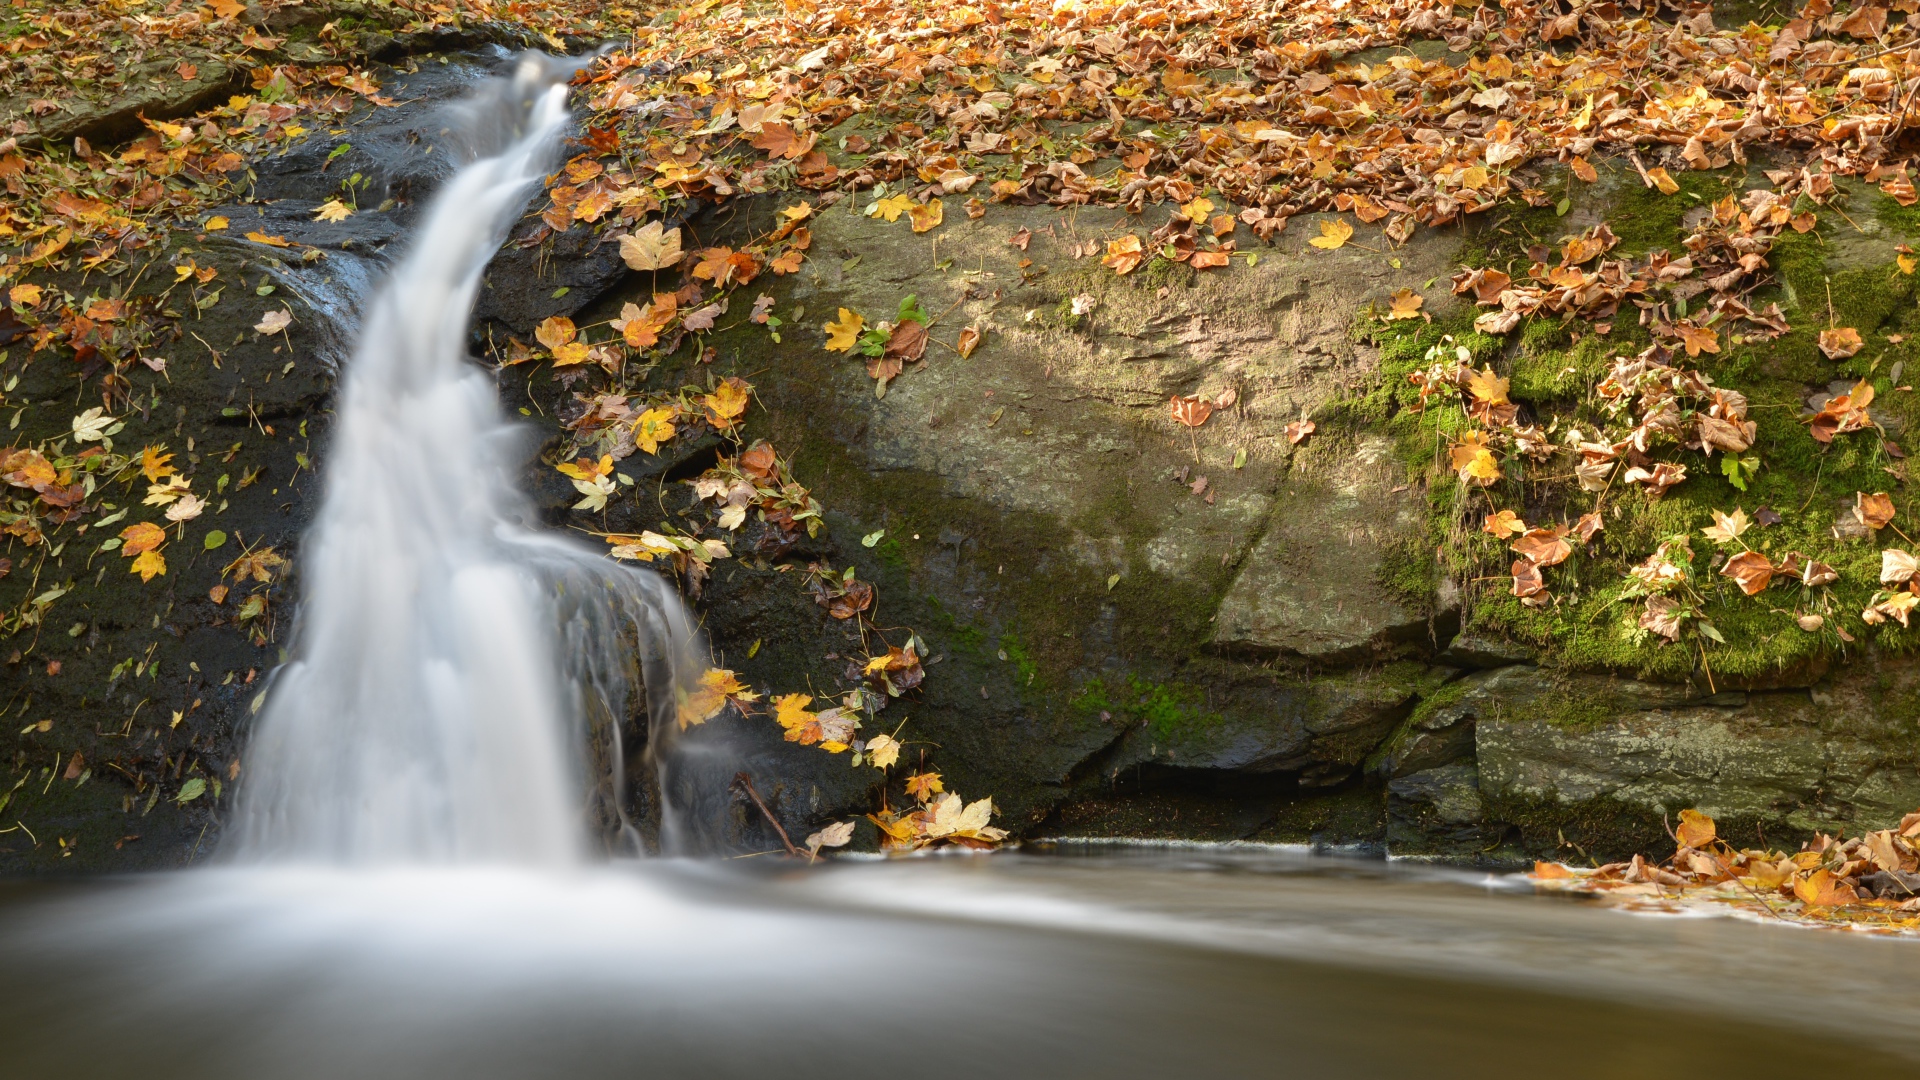 Маленький водопад стекает в реку по покрытым опавшими листьями камням